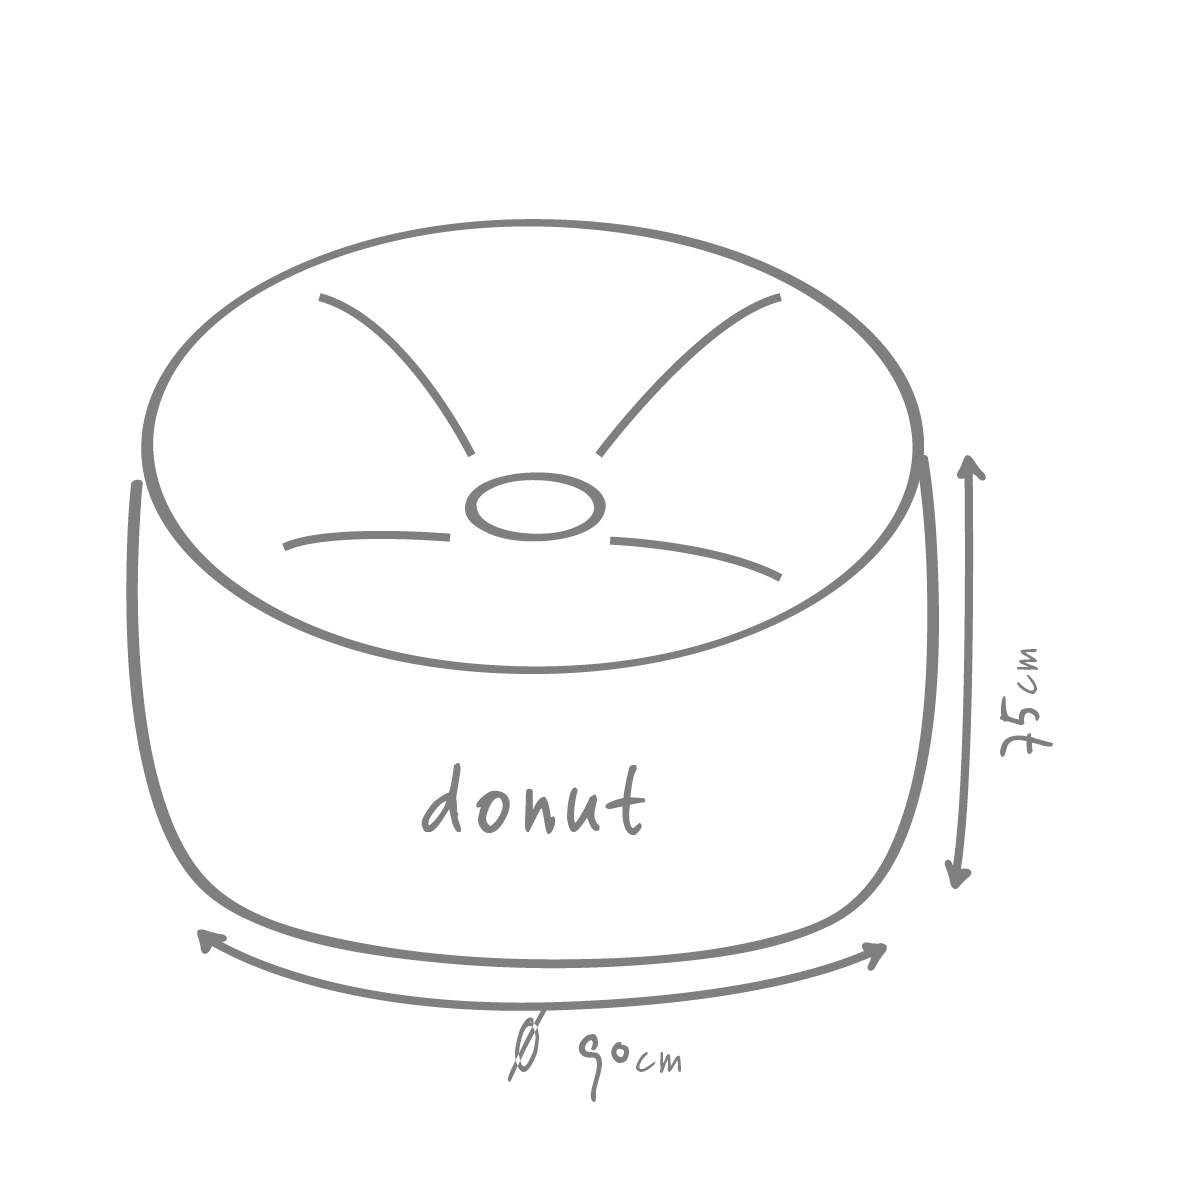 donut modell skizze